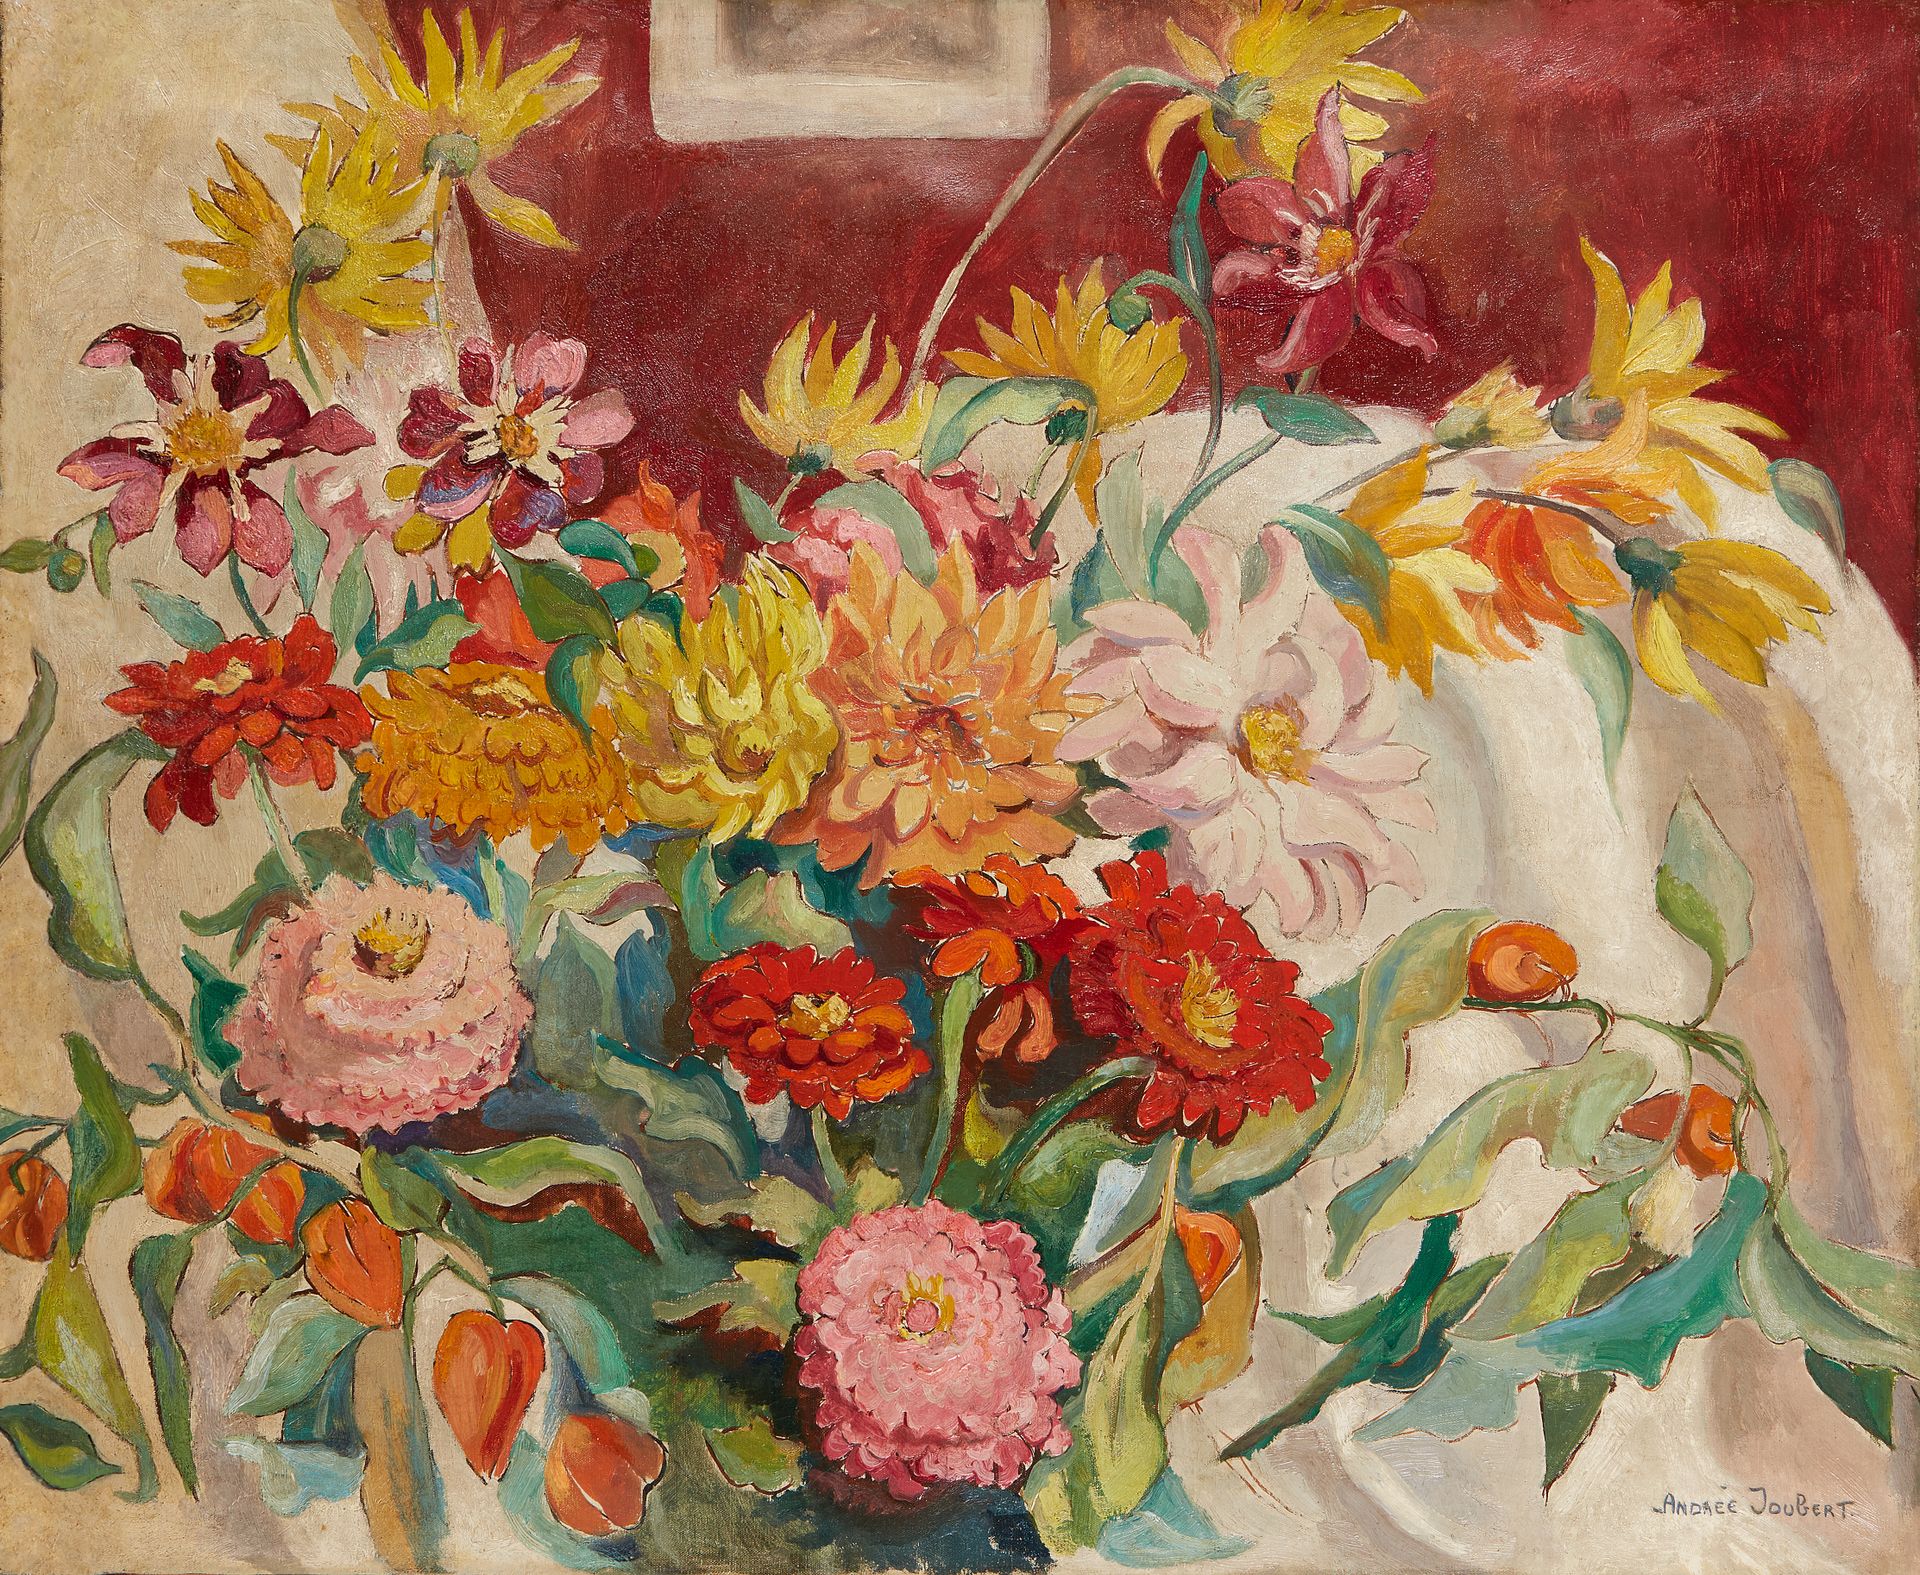 Null 安德烈-茹贝尔 (1894-1959)

大丽花花束

布面油画，右下角有签名。

60 x 73 cm

修复。